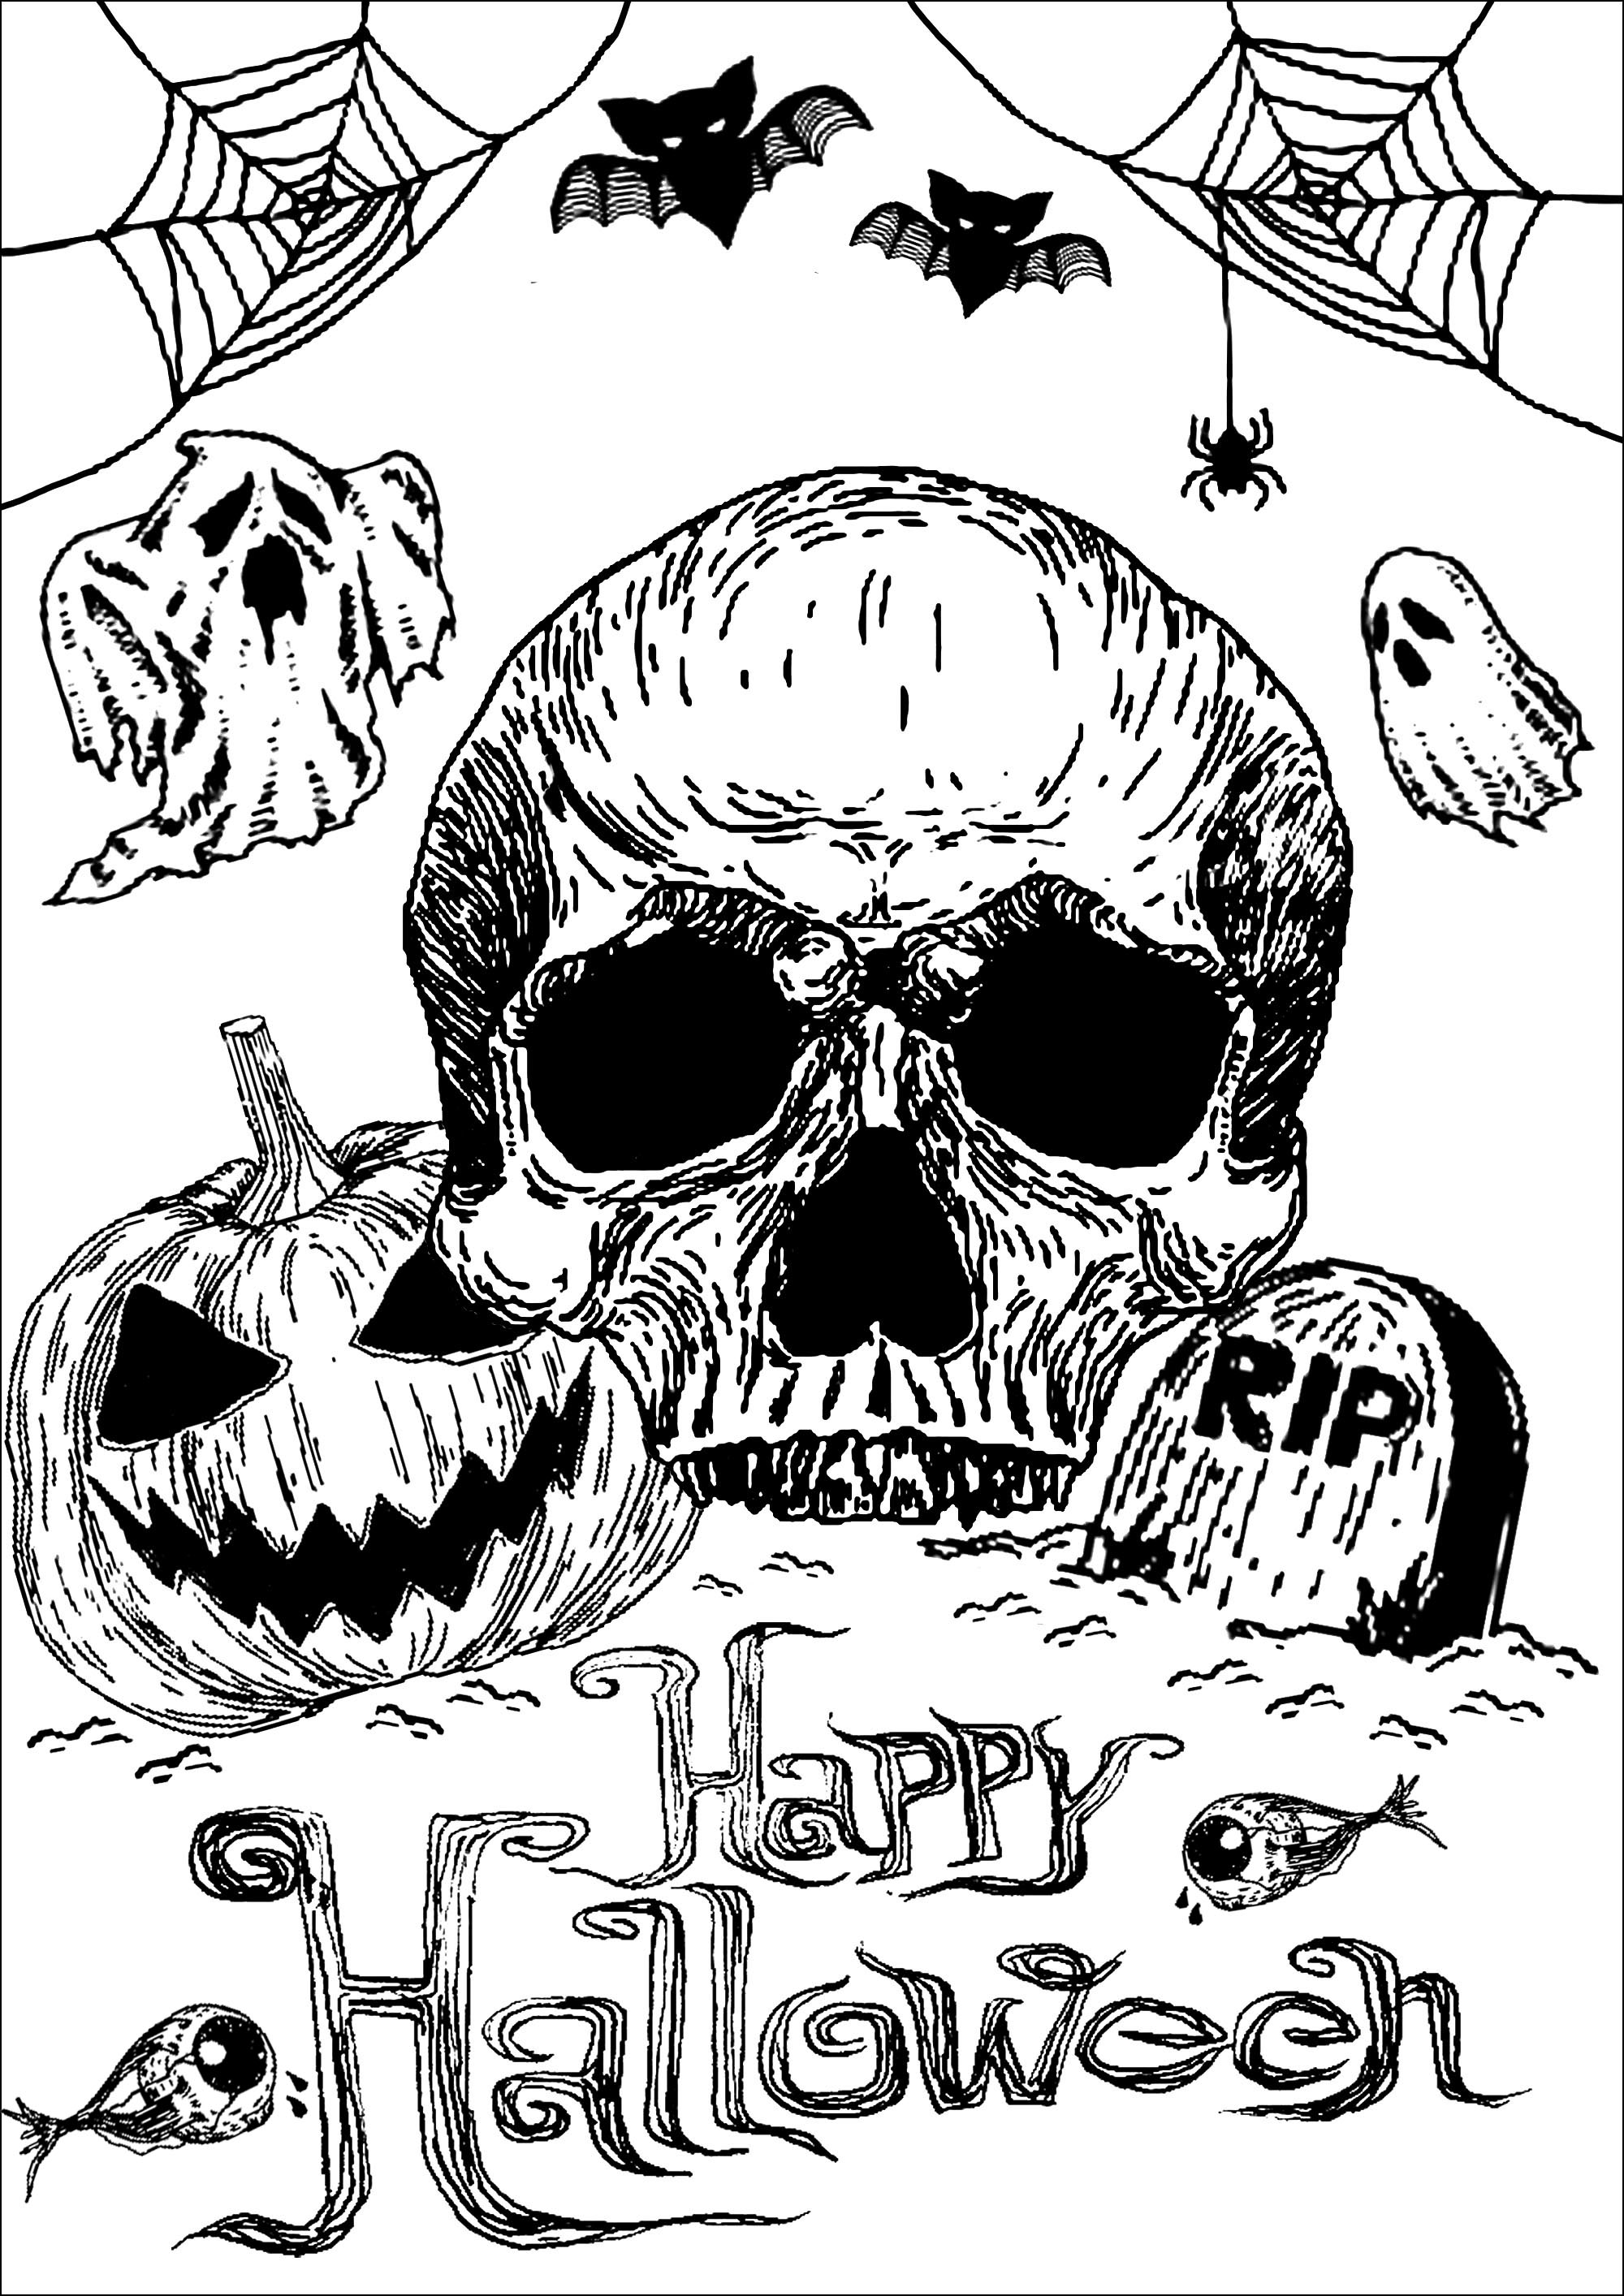 Coloriez pour Halloween ce crâne, cette citrouille et cette tombe ... accompagnée de jolis fantômes, chauves-souris, toiles d'araignées .., Artist : Art. Isabelle